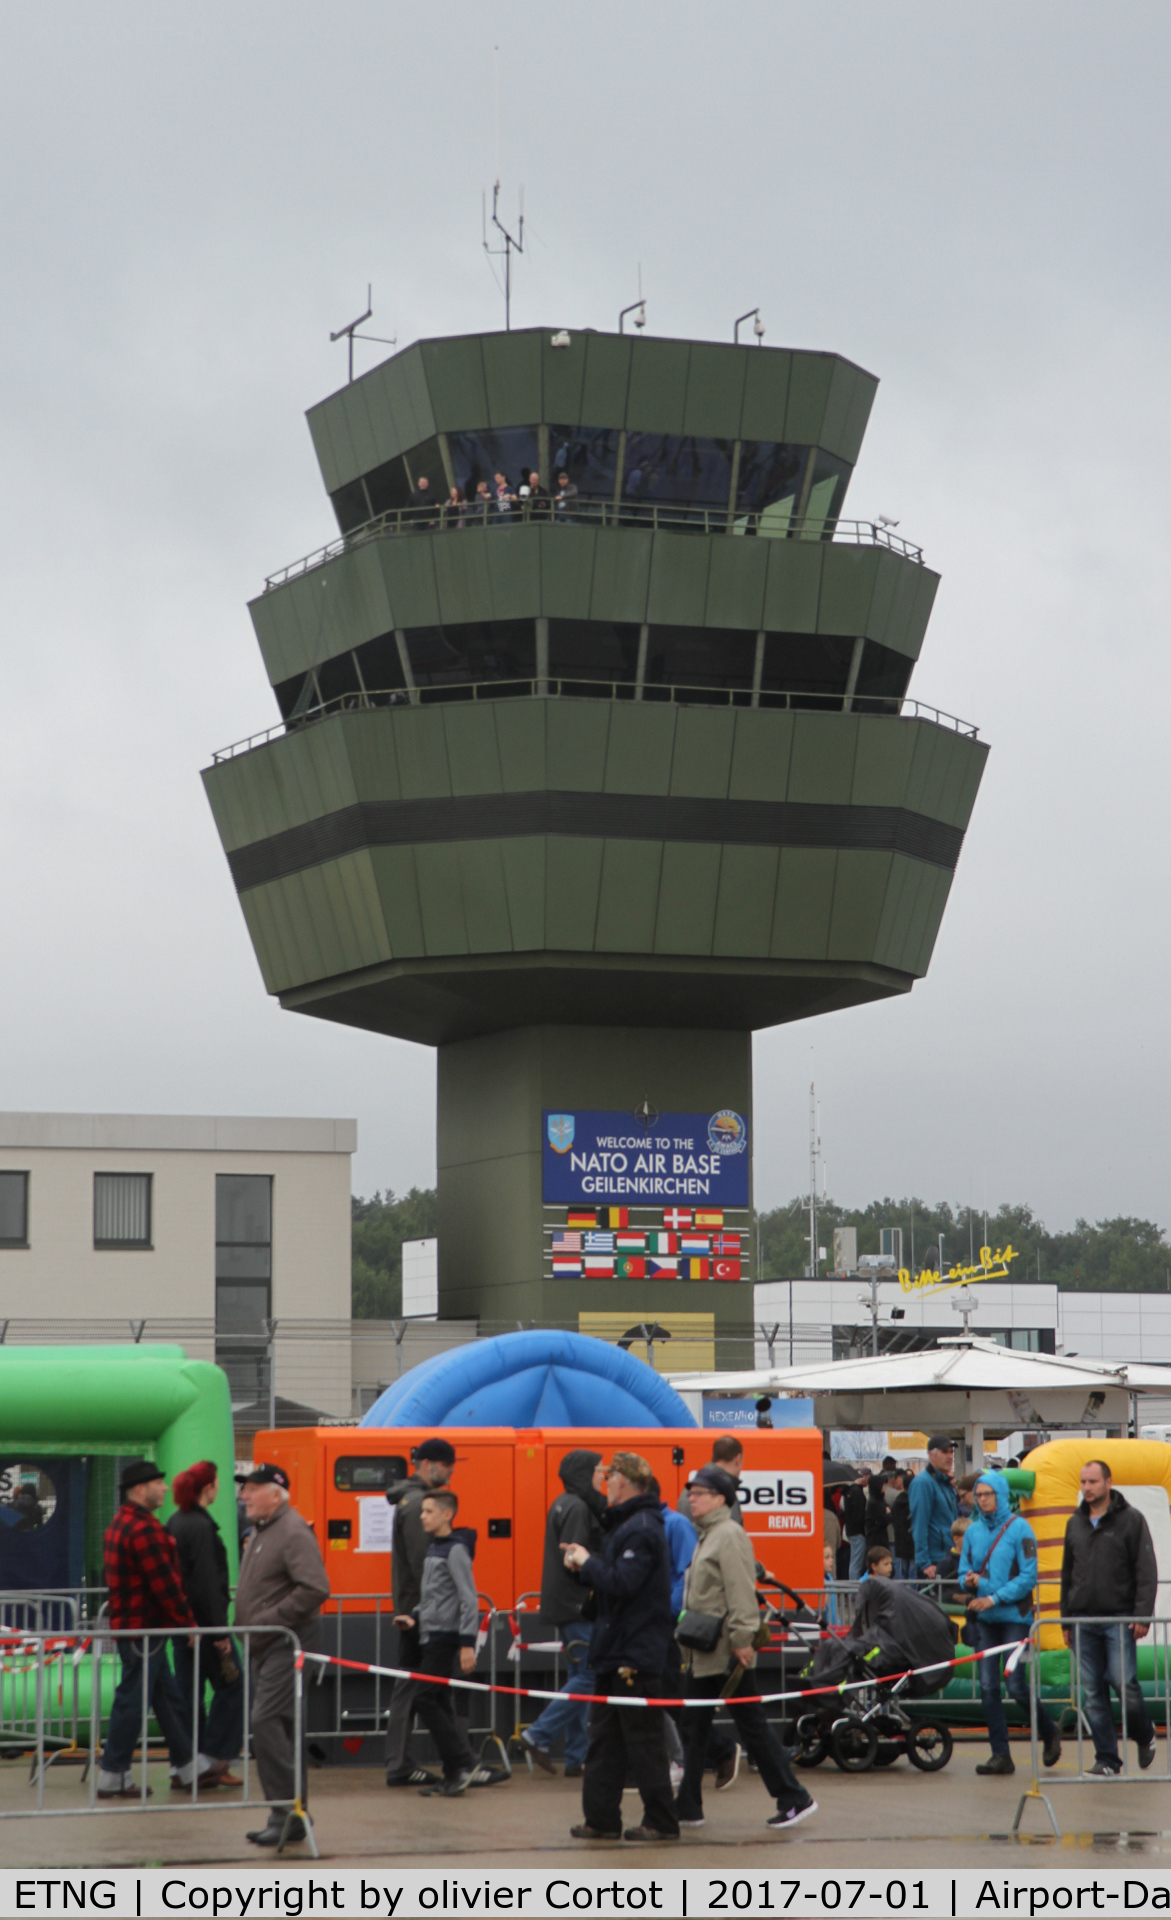 NATO Air Base Geilenkirchen Airport, Geilenkirchen Germany (ETNG) - the control tower